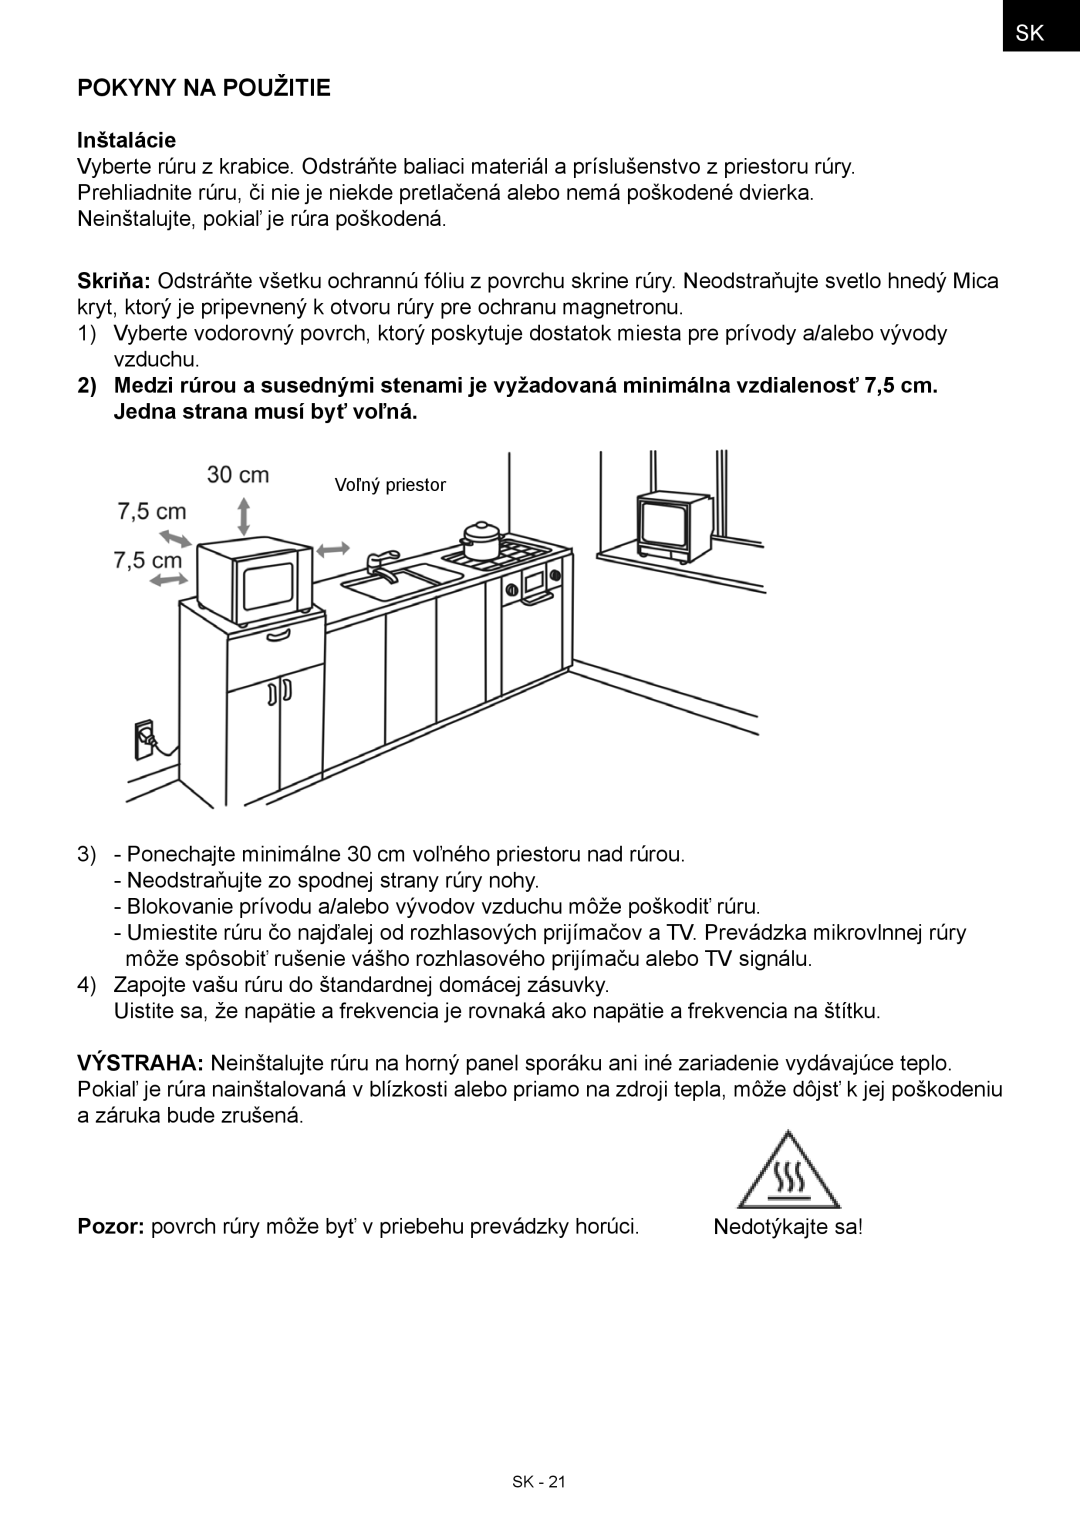 Hyundai MWEGH 281S manual Pokyny na použitie, Inštalácie 